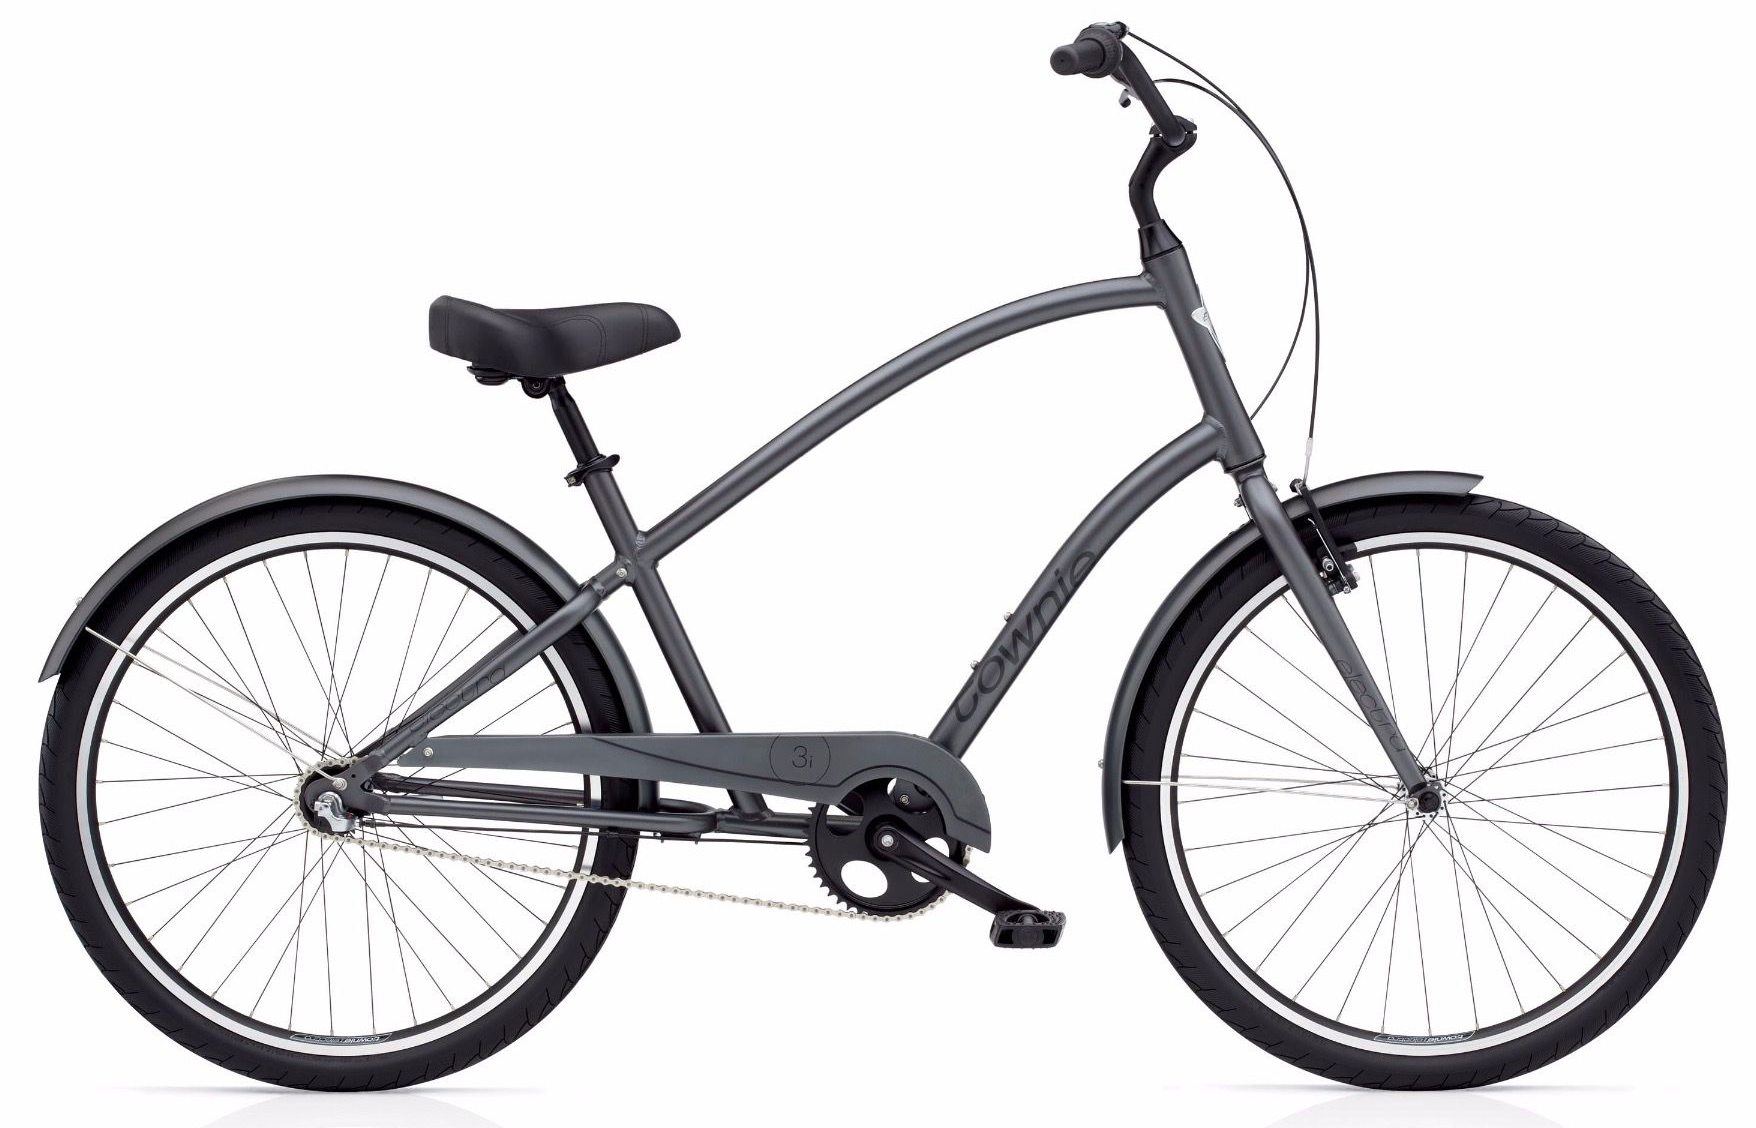  Отзывы о Городском велосипеде Electra Townie Original 3i 2019